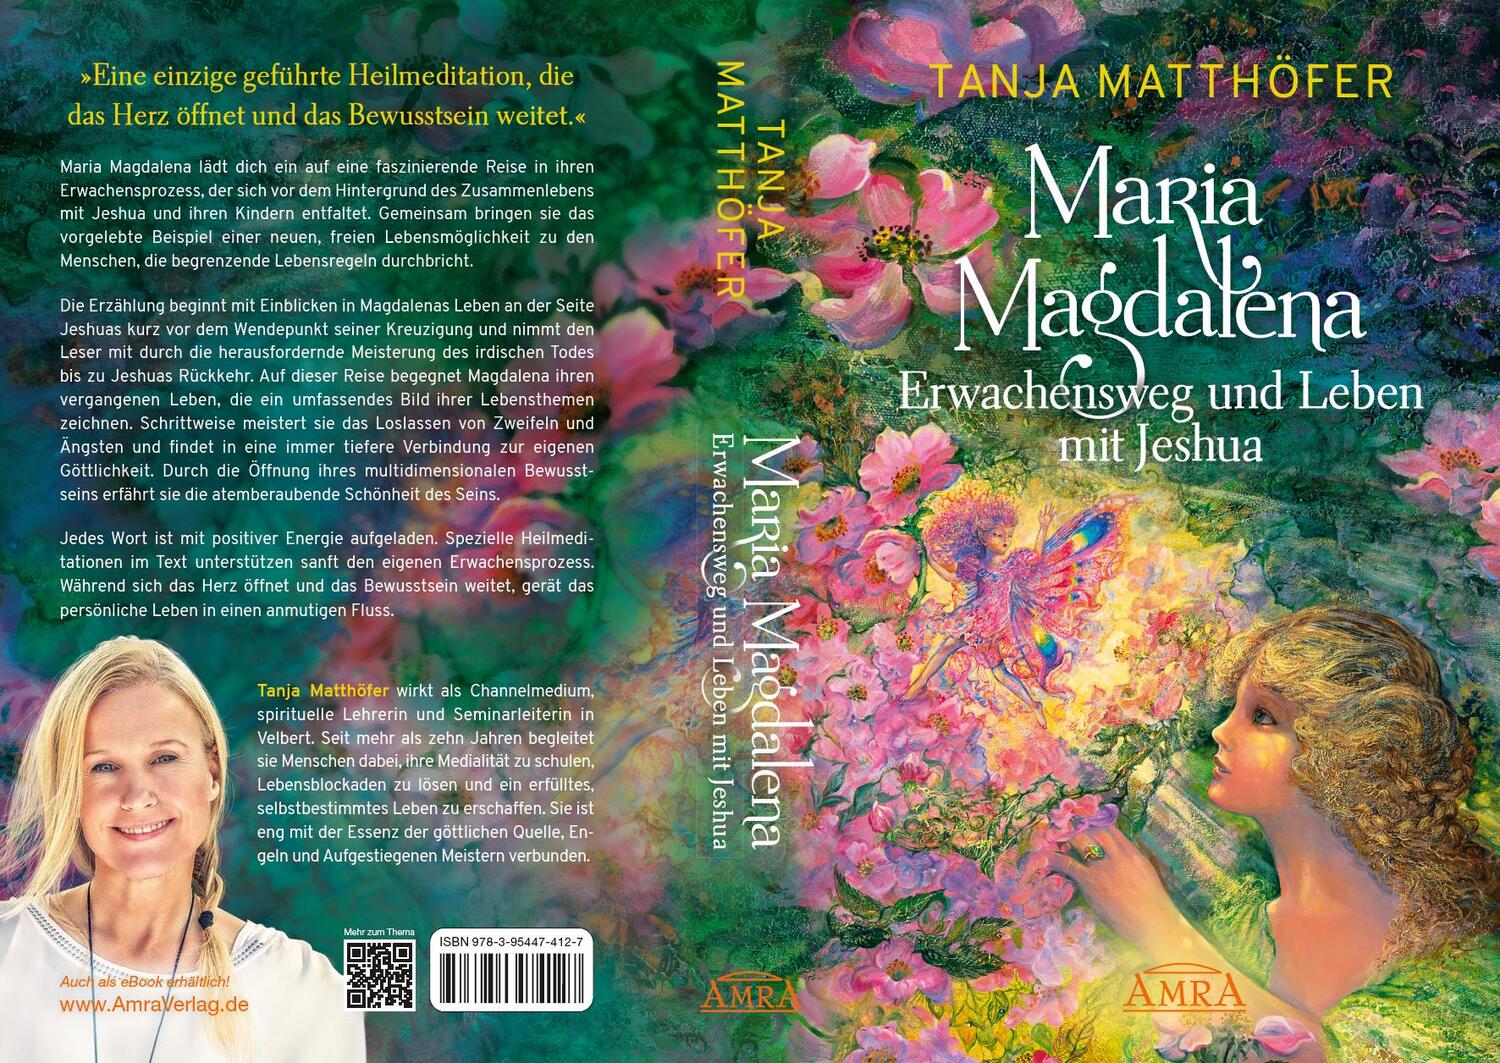 Rückseite: 9783954474127 | MARIA MAGDALENA - Erwachensweg und Leben mit Jeshua | Tanja Matthöfer